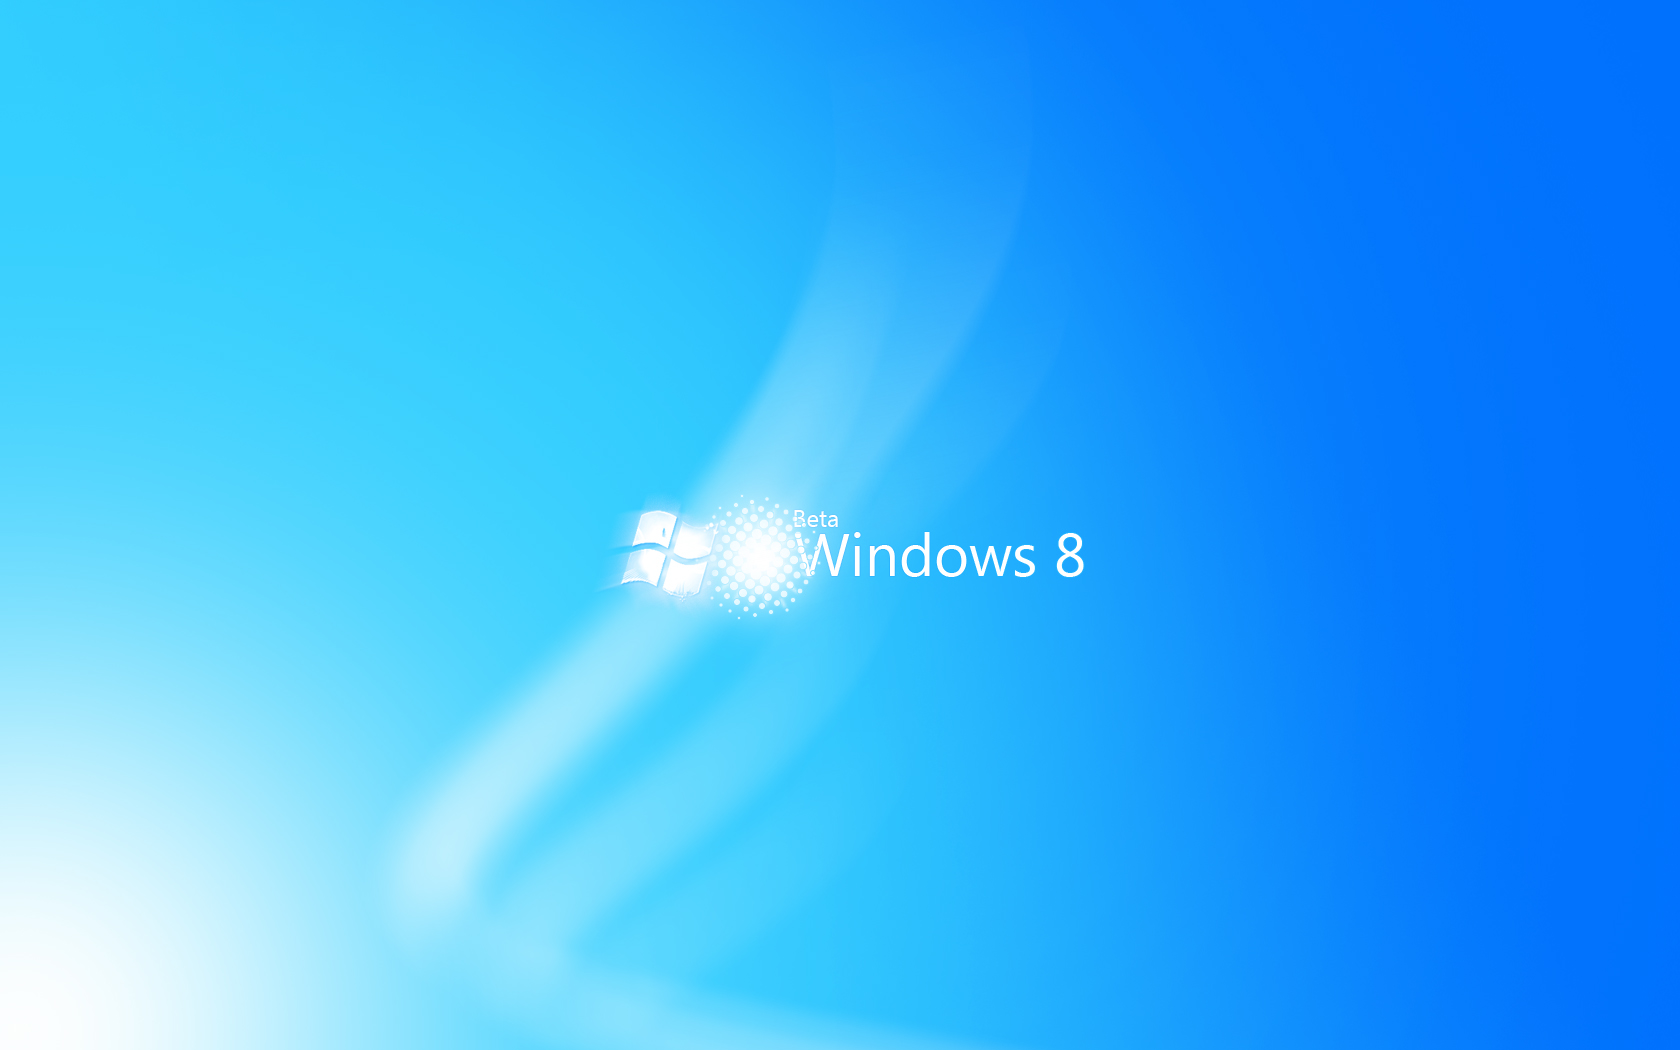 Khám phá 10 hình nền Windows 8 chất lượng cao tại Thông tin công nghệ. Những hình nền này là kết quả của công sức và tâm huyết của các nhà thiết kế trên toàn thế giới. Hãy tải về ngay từ bây giờ để trang trí màn hình của bạn thật tuyệt vời!